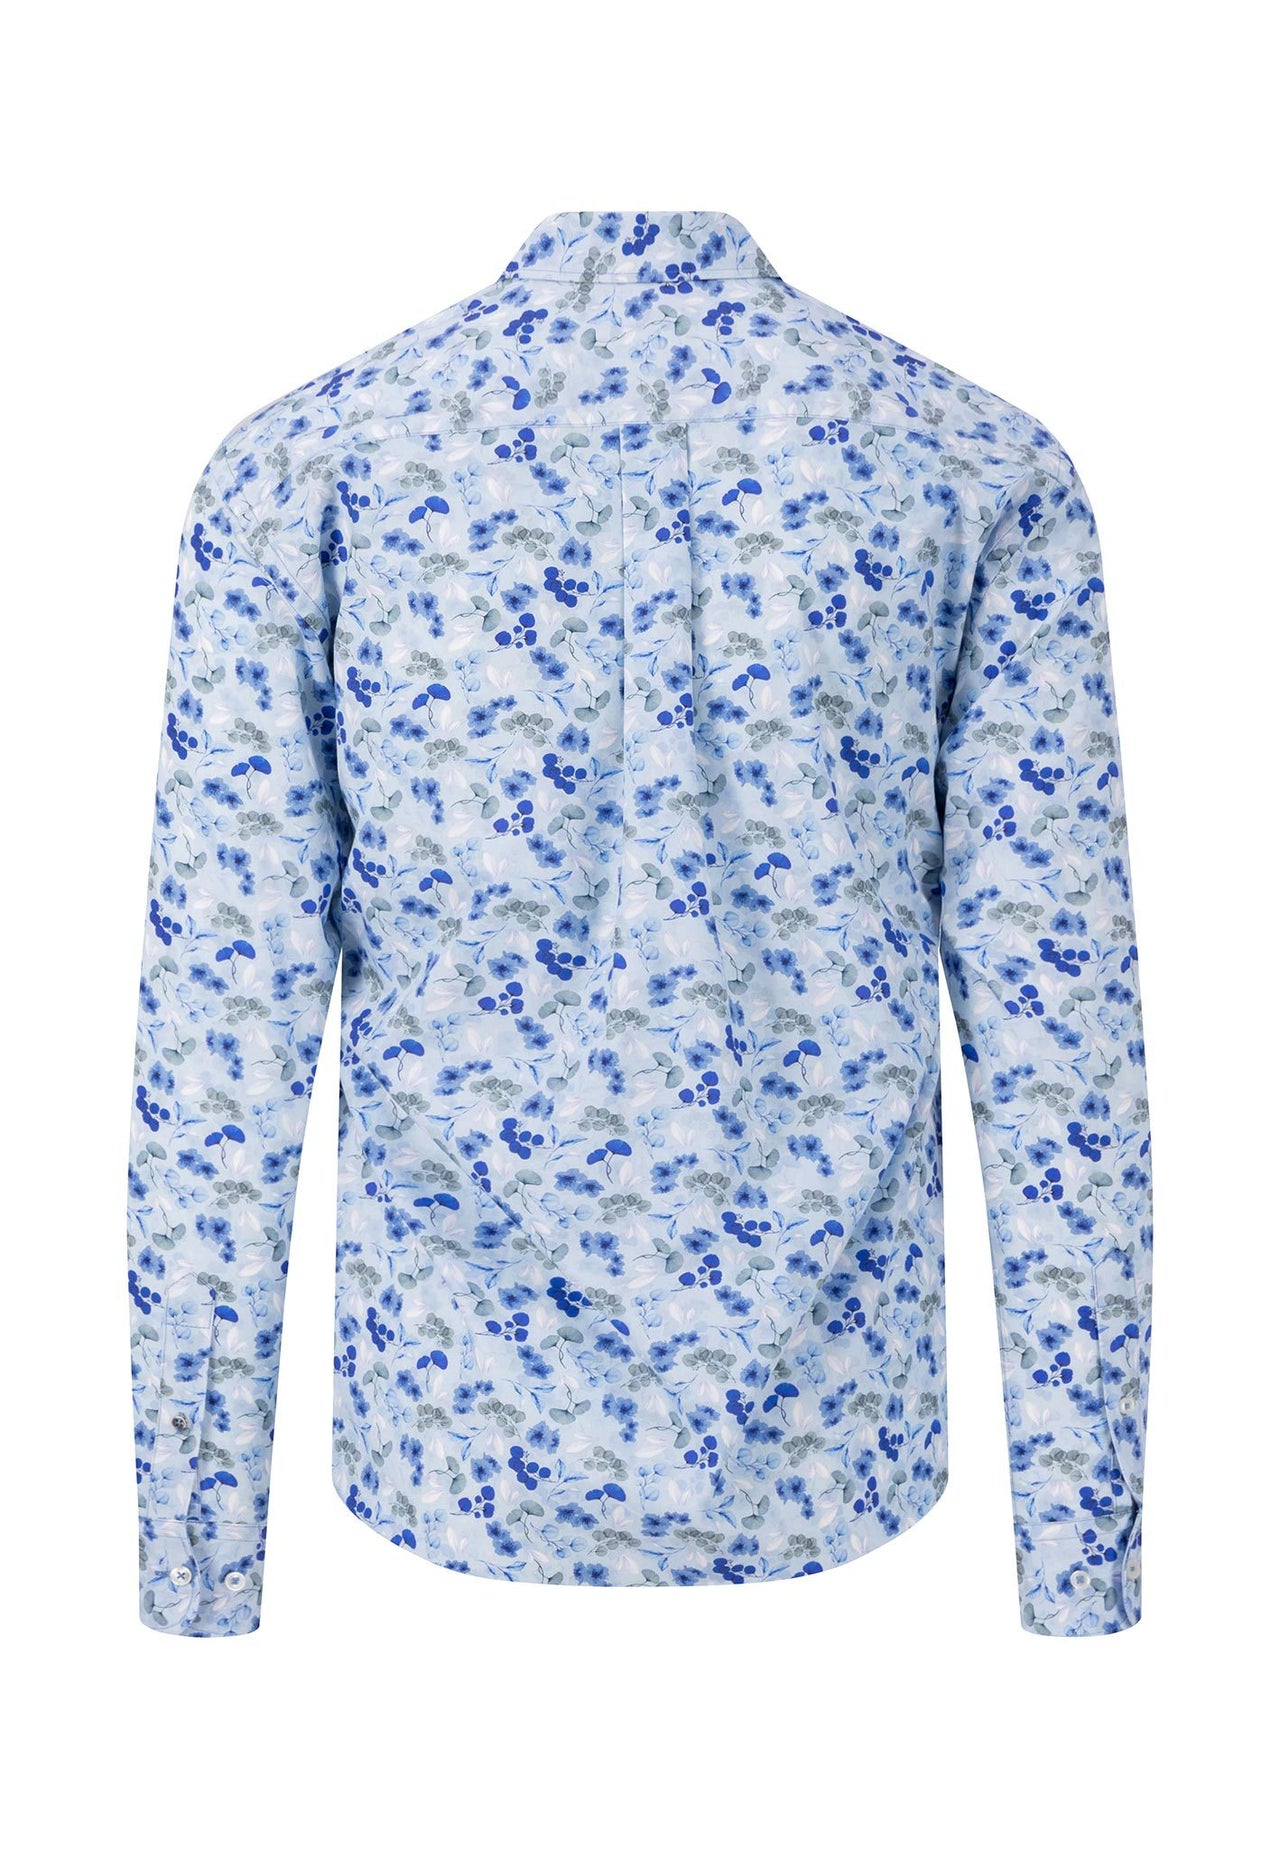 Fynch-Hatton Summer Prints Shirt - Summer Breeze